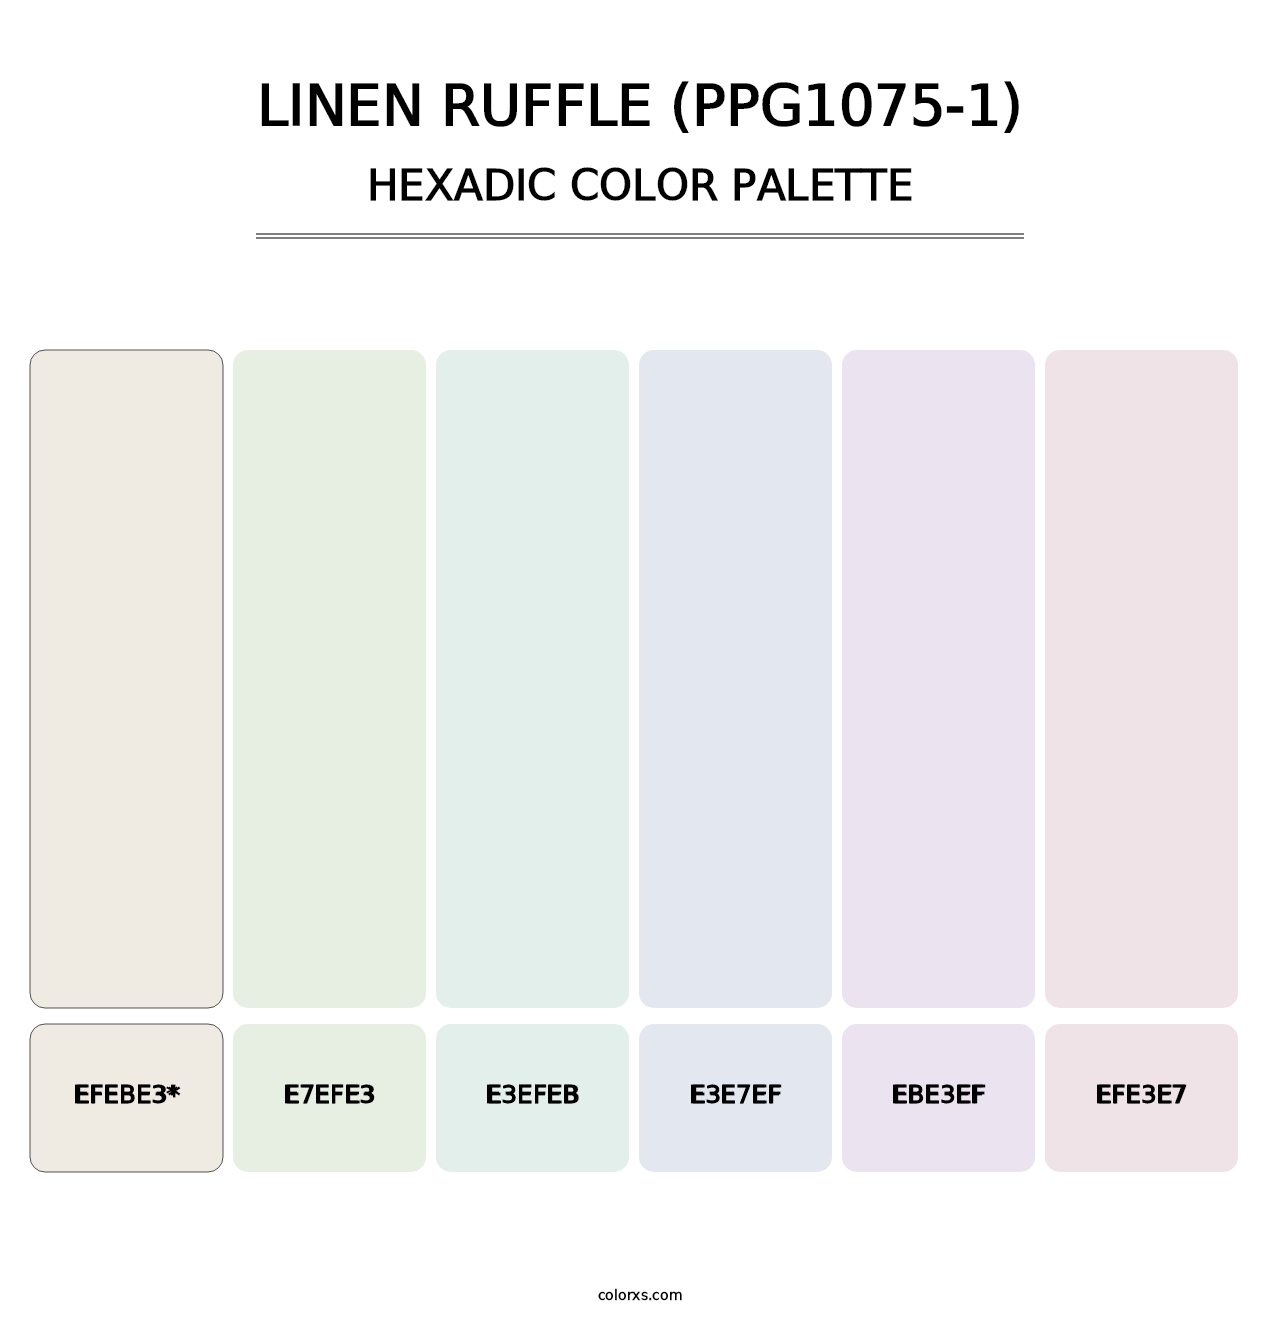 Linen Ruffle (PPG1075-1) - Hexadic Color Palette